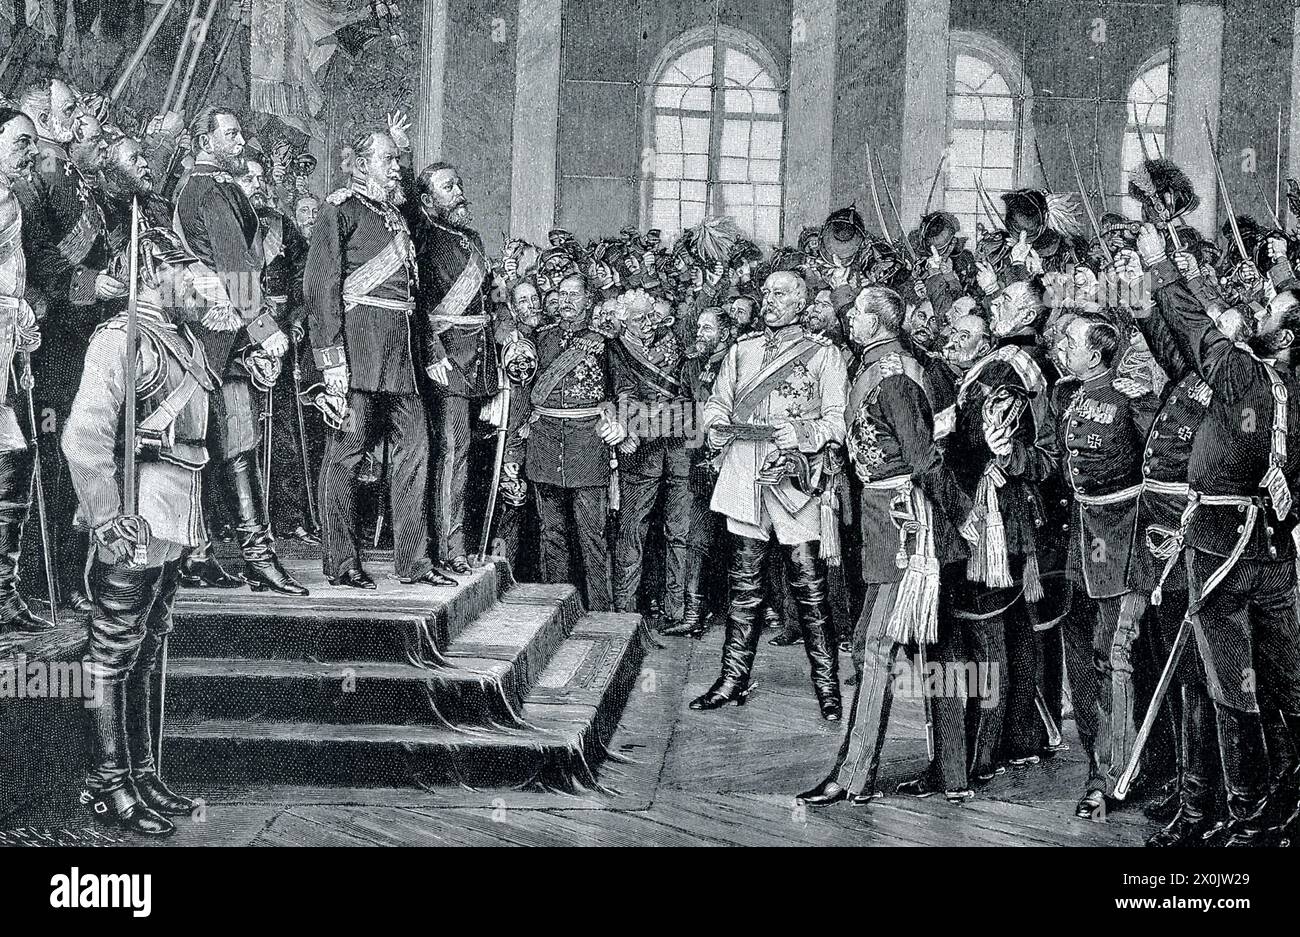 La légende du début des années 1900 se lit comme suit : « le roi Guillaume proclame empereur à Versailles. C’est alors que les troupes allemandes assiégeaient encore Paris que l’union de leur pays devint un fait accompli. Le roi Guillaume de Prusse, élu à l’unanimité comme souverain, fut proclamé empereur, non pas à Berlin, mais à Versailles, le palais capturé par les rois de France, dans la célèbre « salle des miroirs » construite par Louis XIV. Autour du nouvel empereur étaient rassemblés, non pas des hommes de paix, mais des guerriers et des princes, Bismarck le chancelier de fer, et Moltke le plus grand commandant de l'époque. Banque D'Images